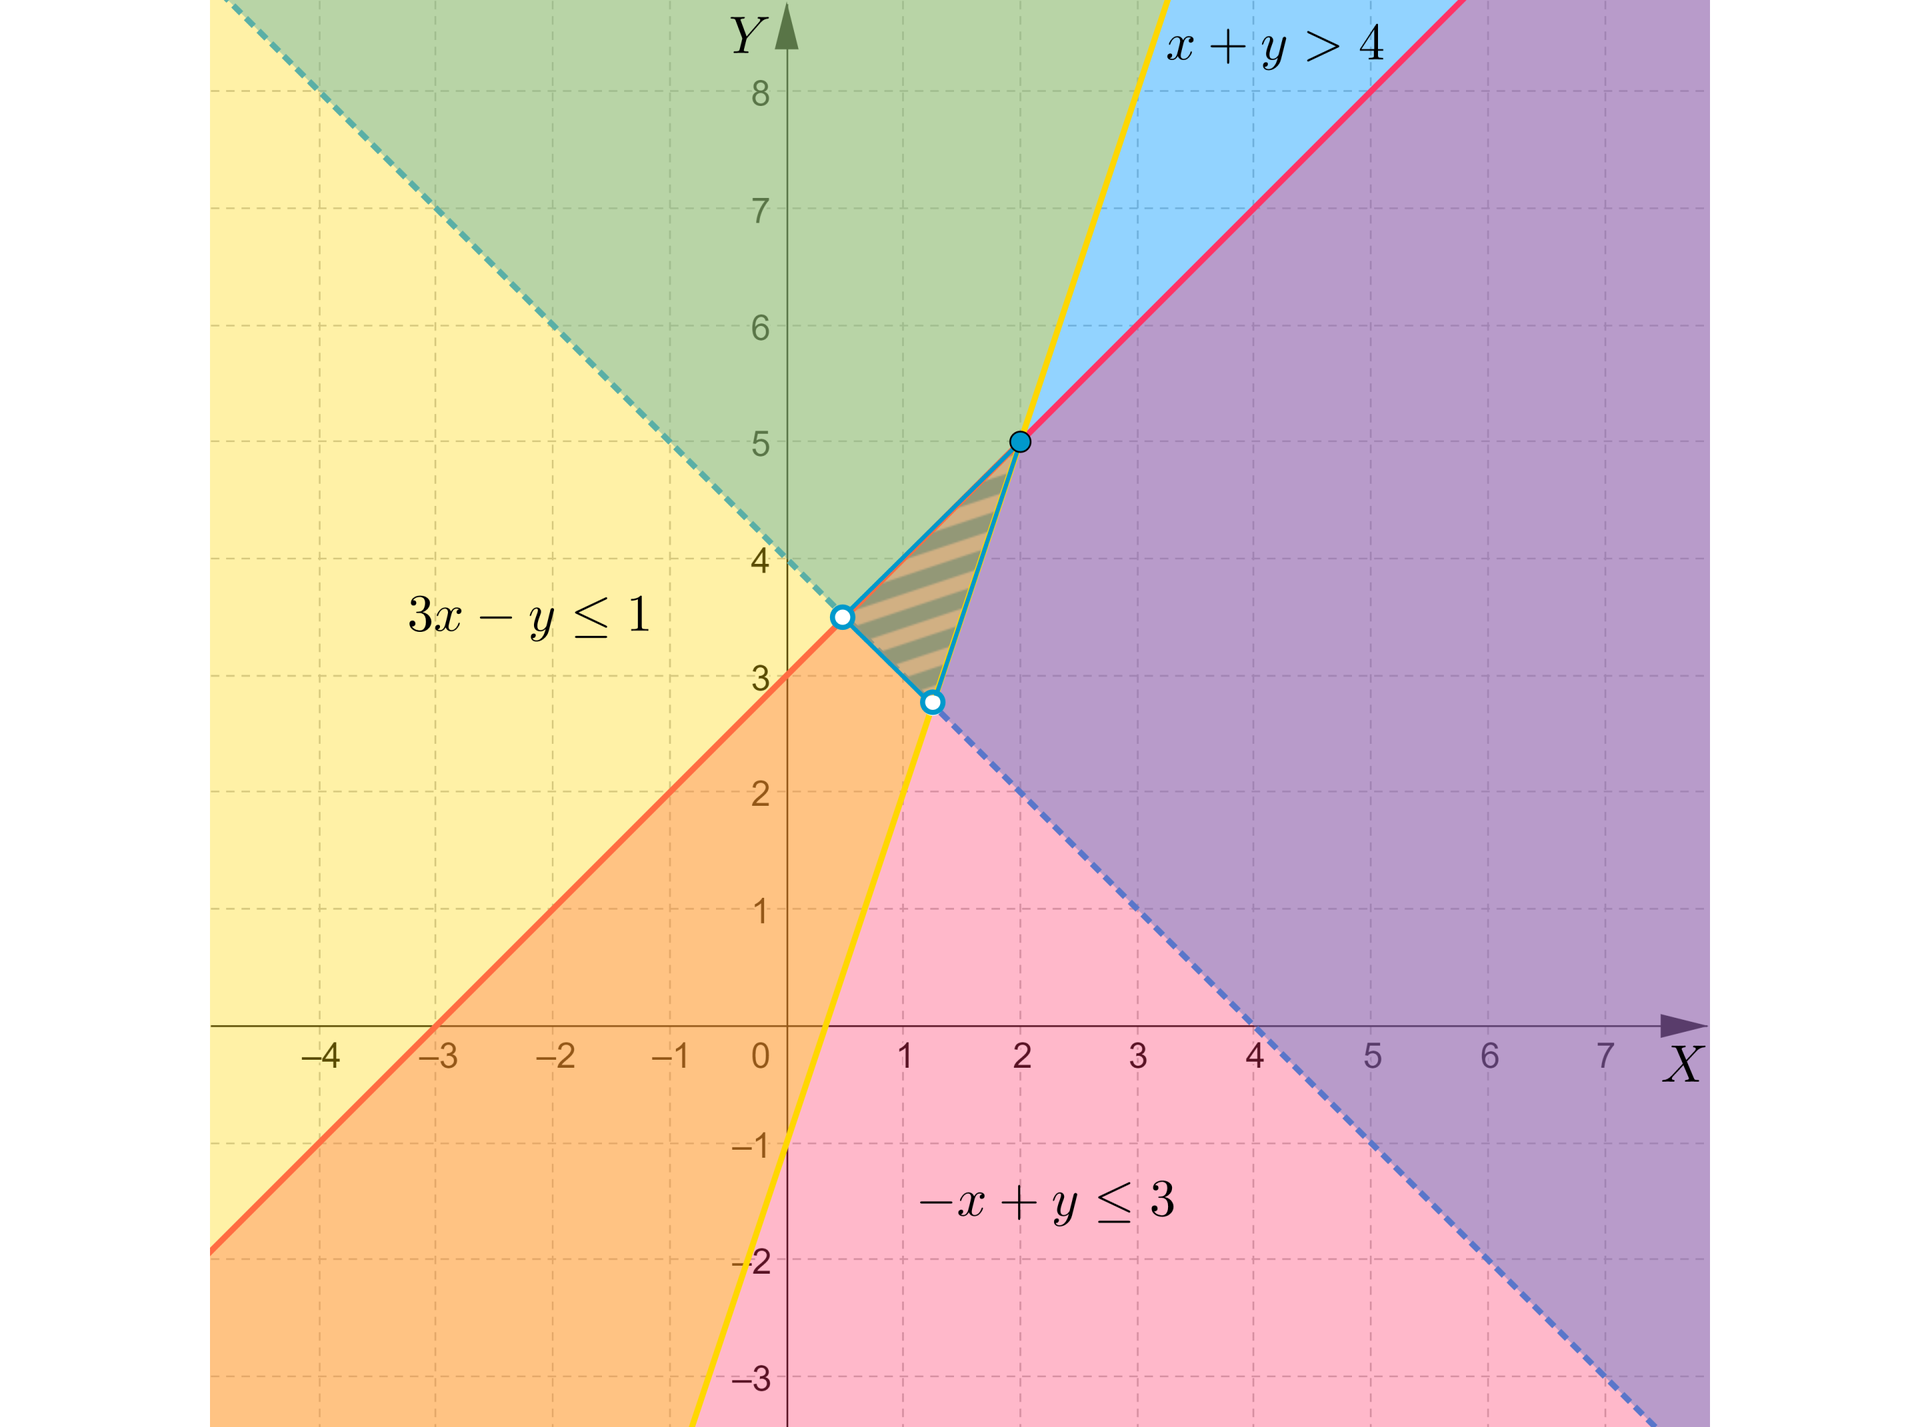 Grafika przedstawia układ współrzędnych z poziomą osią x od minus 4 do siedmiu, oraz pionową osią y z wartościami od minus 3 do ośmiu. Na płaszczyźnie zaznaczone są 3 proste , pierwsza ogranicza nierówność x+y&gt;4  , druga  3x−y≤1 i trzecia −x+y≤3. Pierwsza prosta jest narysowana linią przerywaną, a pozostałe są narysowane liniami ciągłymi. Na płaszczyźnie zaznaczono kolorami następujące obszary: obszar powyżej pierwszej prostej zaznaczono kolorem niebieskim, obszar po lewej stronie drugiej prostej zaznaczono kolorem żółtym, natomiast obszar poniżej trzeciej prostej zaznaczono kolorem różowym. Proste przecinają się w trzech punktach, a obszar pomiędzy nimi ma kształt trójkąta. Punkty przecięcia się drugiej i trzeciej prostej z prostą pierwszą są zaznaczone niezamalowanymi kropkami, natomiast punkt przecięcia prostej drugiej z trzecią jest zaznaczony zamalowaną kropką.